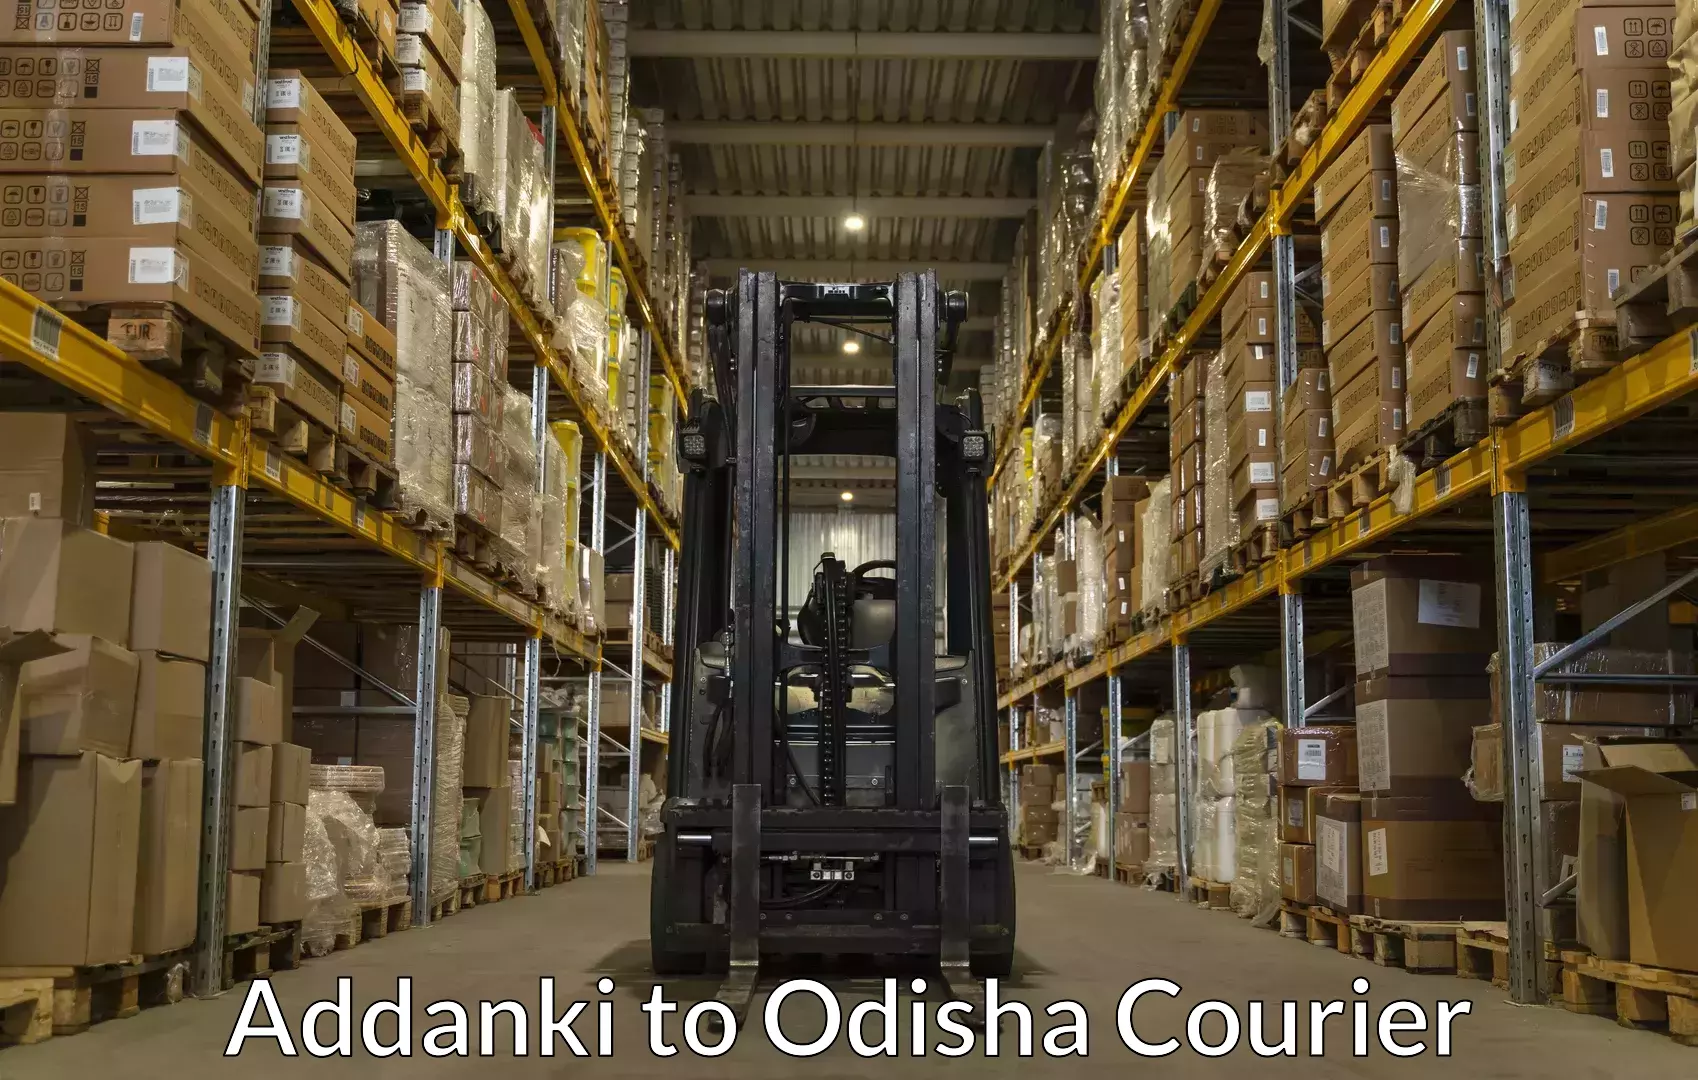 Furniture transport company Addanki to Odisha